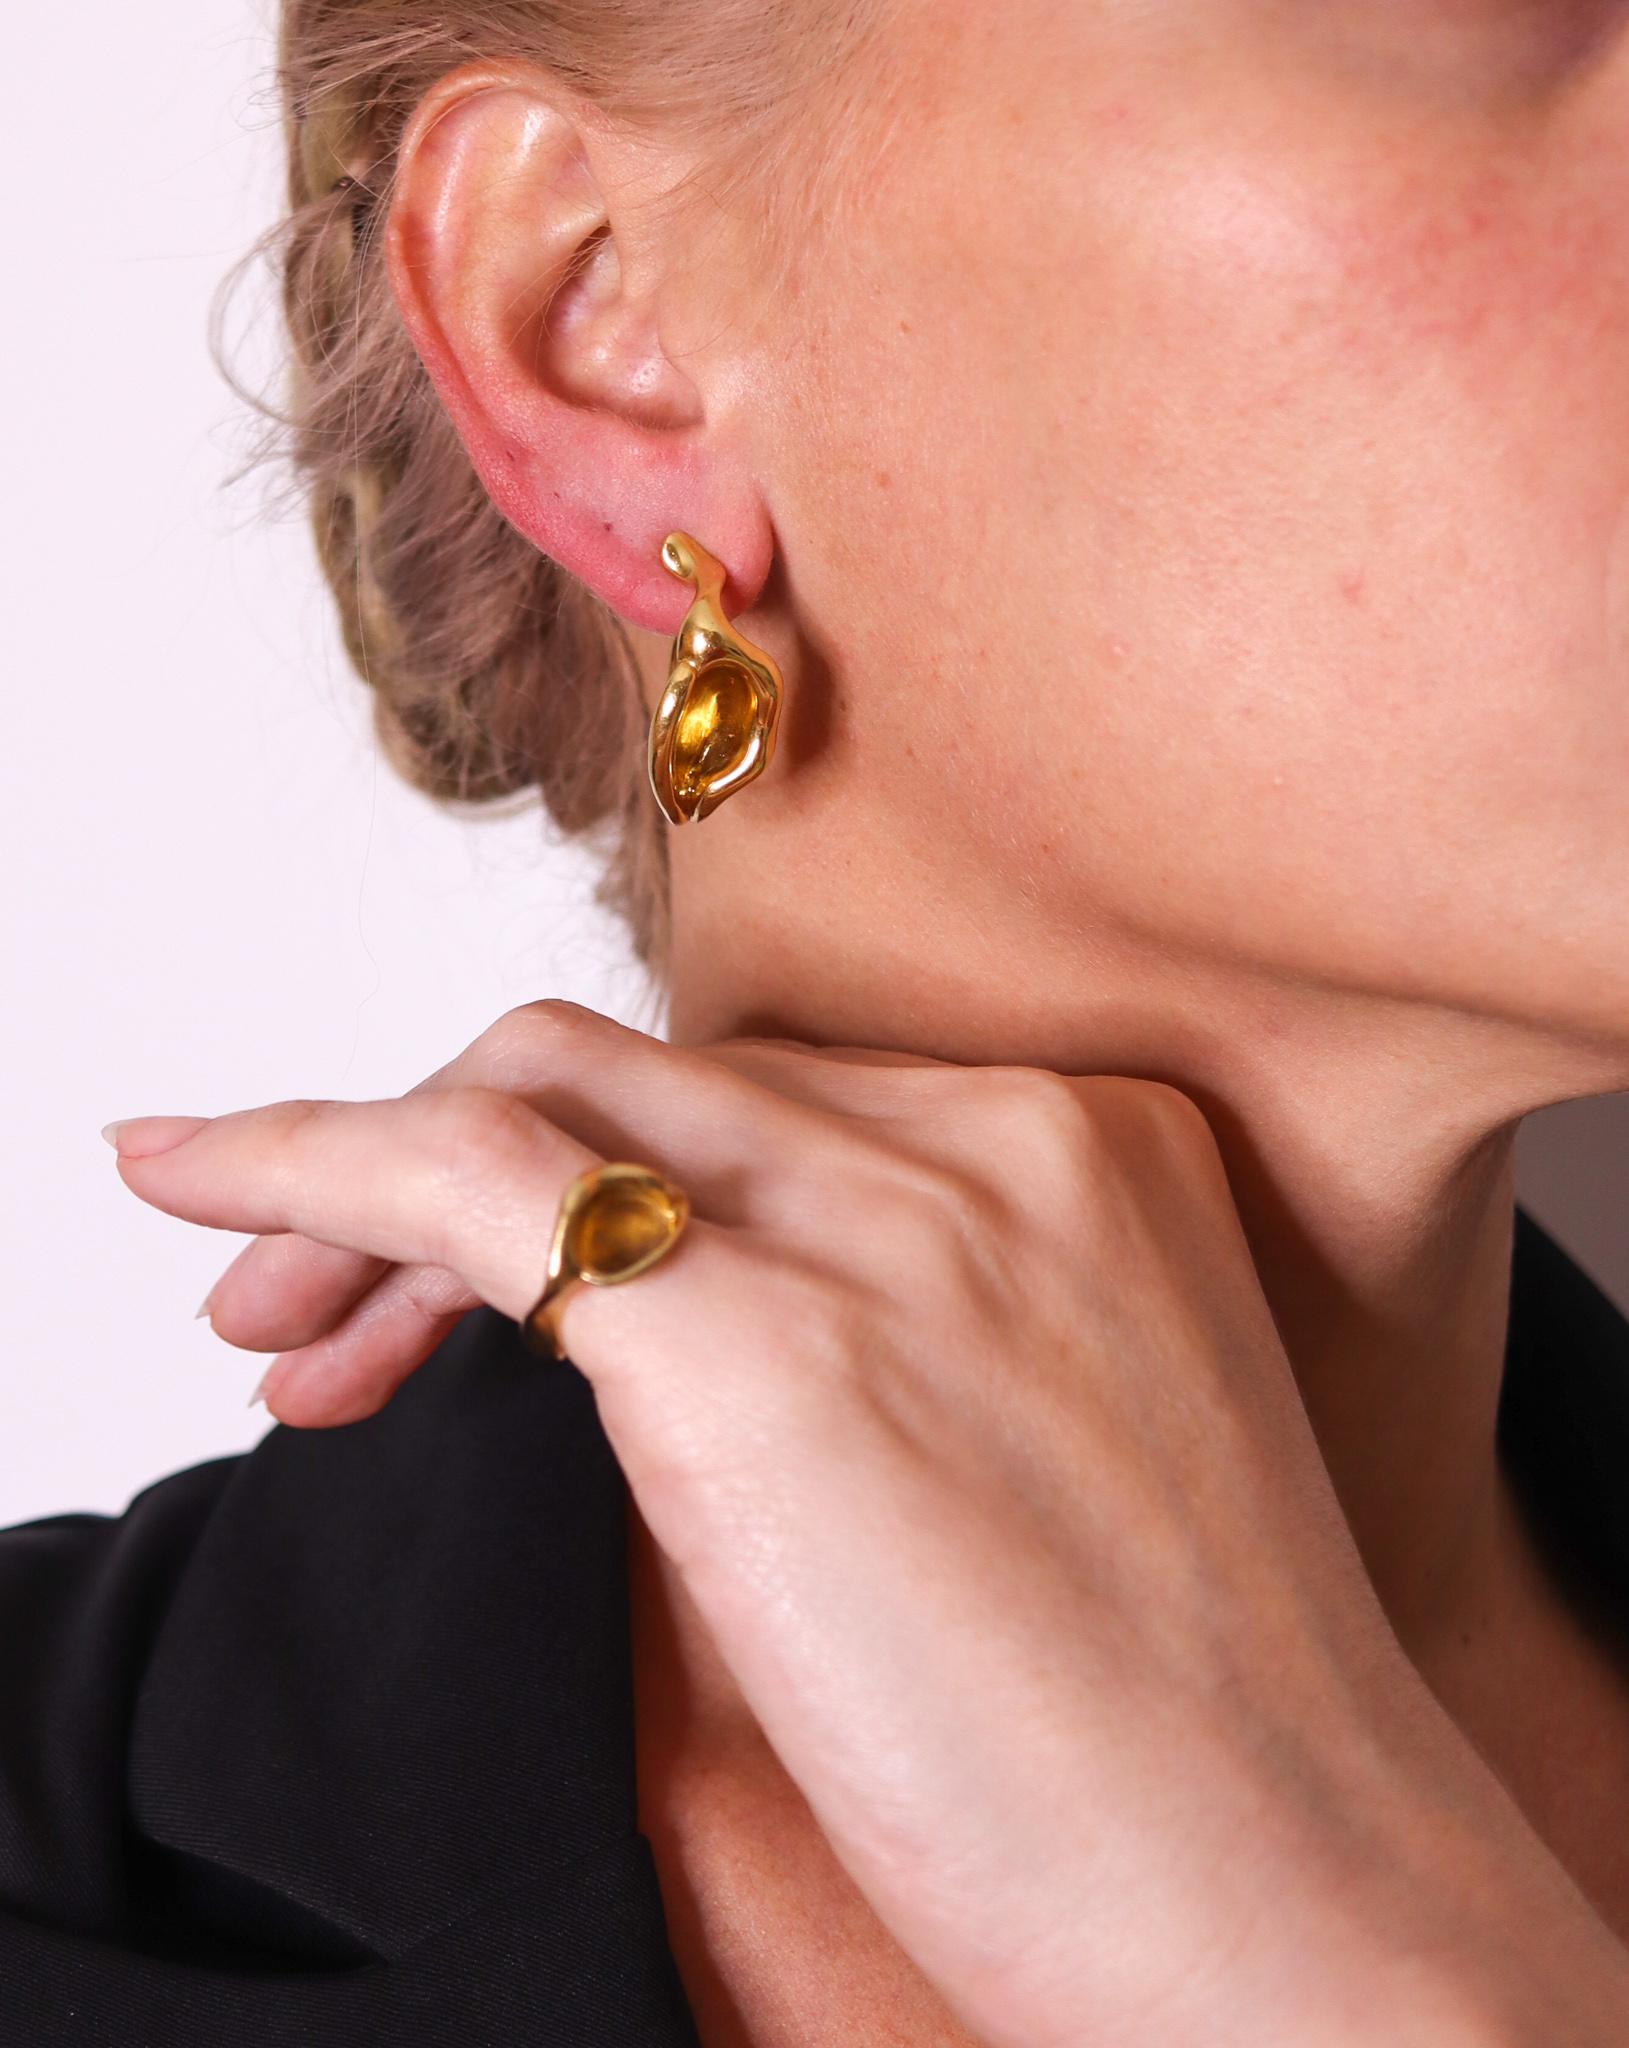 Skulpturale Lilien-Ohrringe, entworfen von Elsa Peretti (1940-2021) für Tiffany & Co.

Dieses skulpturale Paar Ohrringe wurde von Peretti für Tiffany entworfen, etwa Ende der 1970er Jahre. Sie sind aus massivem 18-karätigem Gelbgold gefertigt und